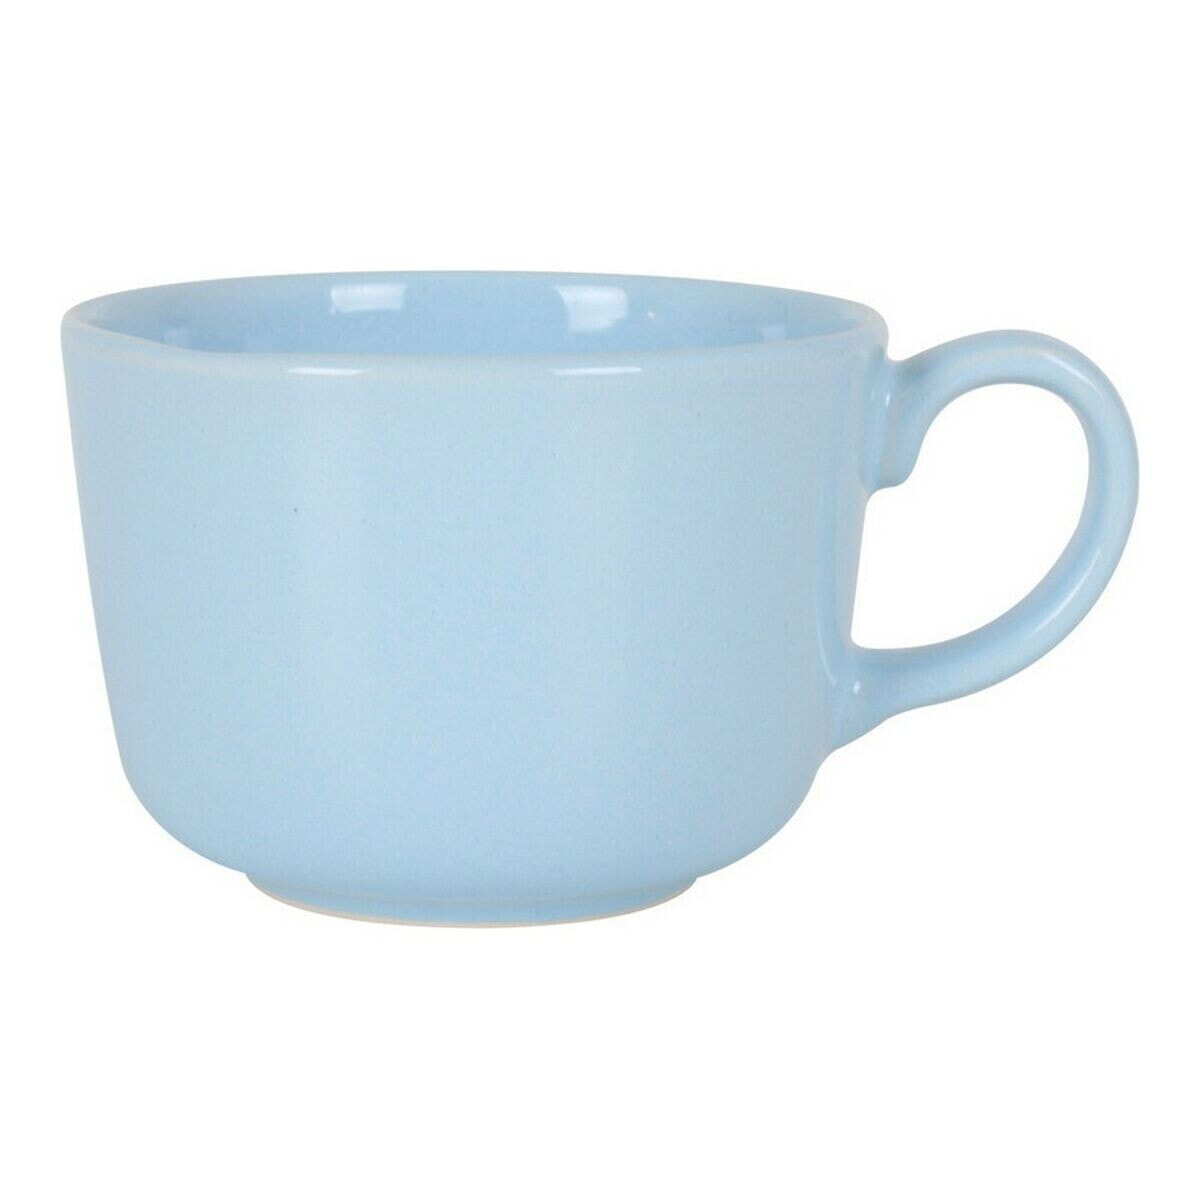 Cup Brioche Ceramic Blue 475 ml